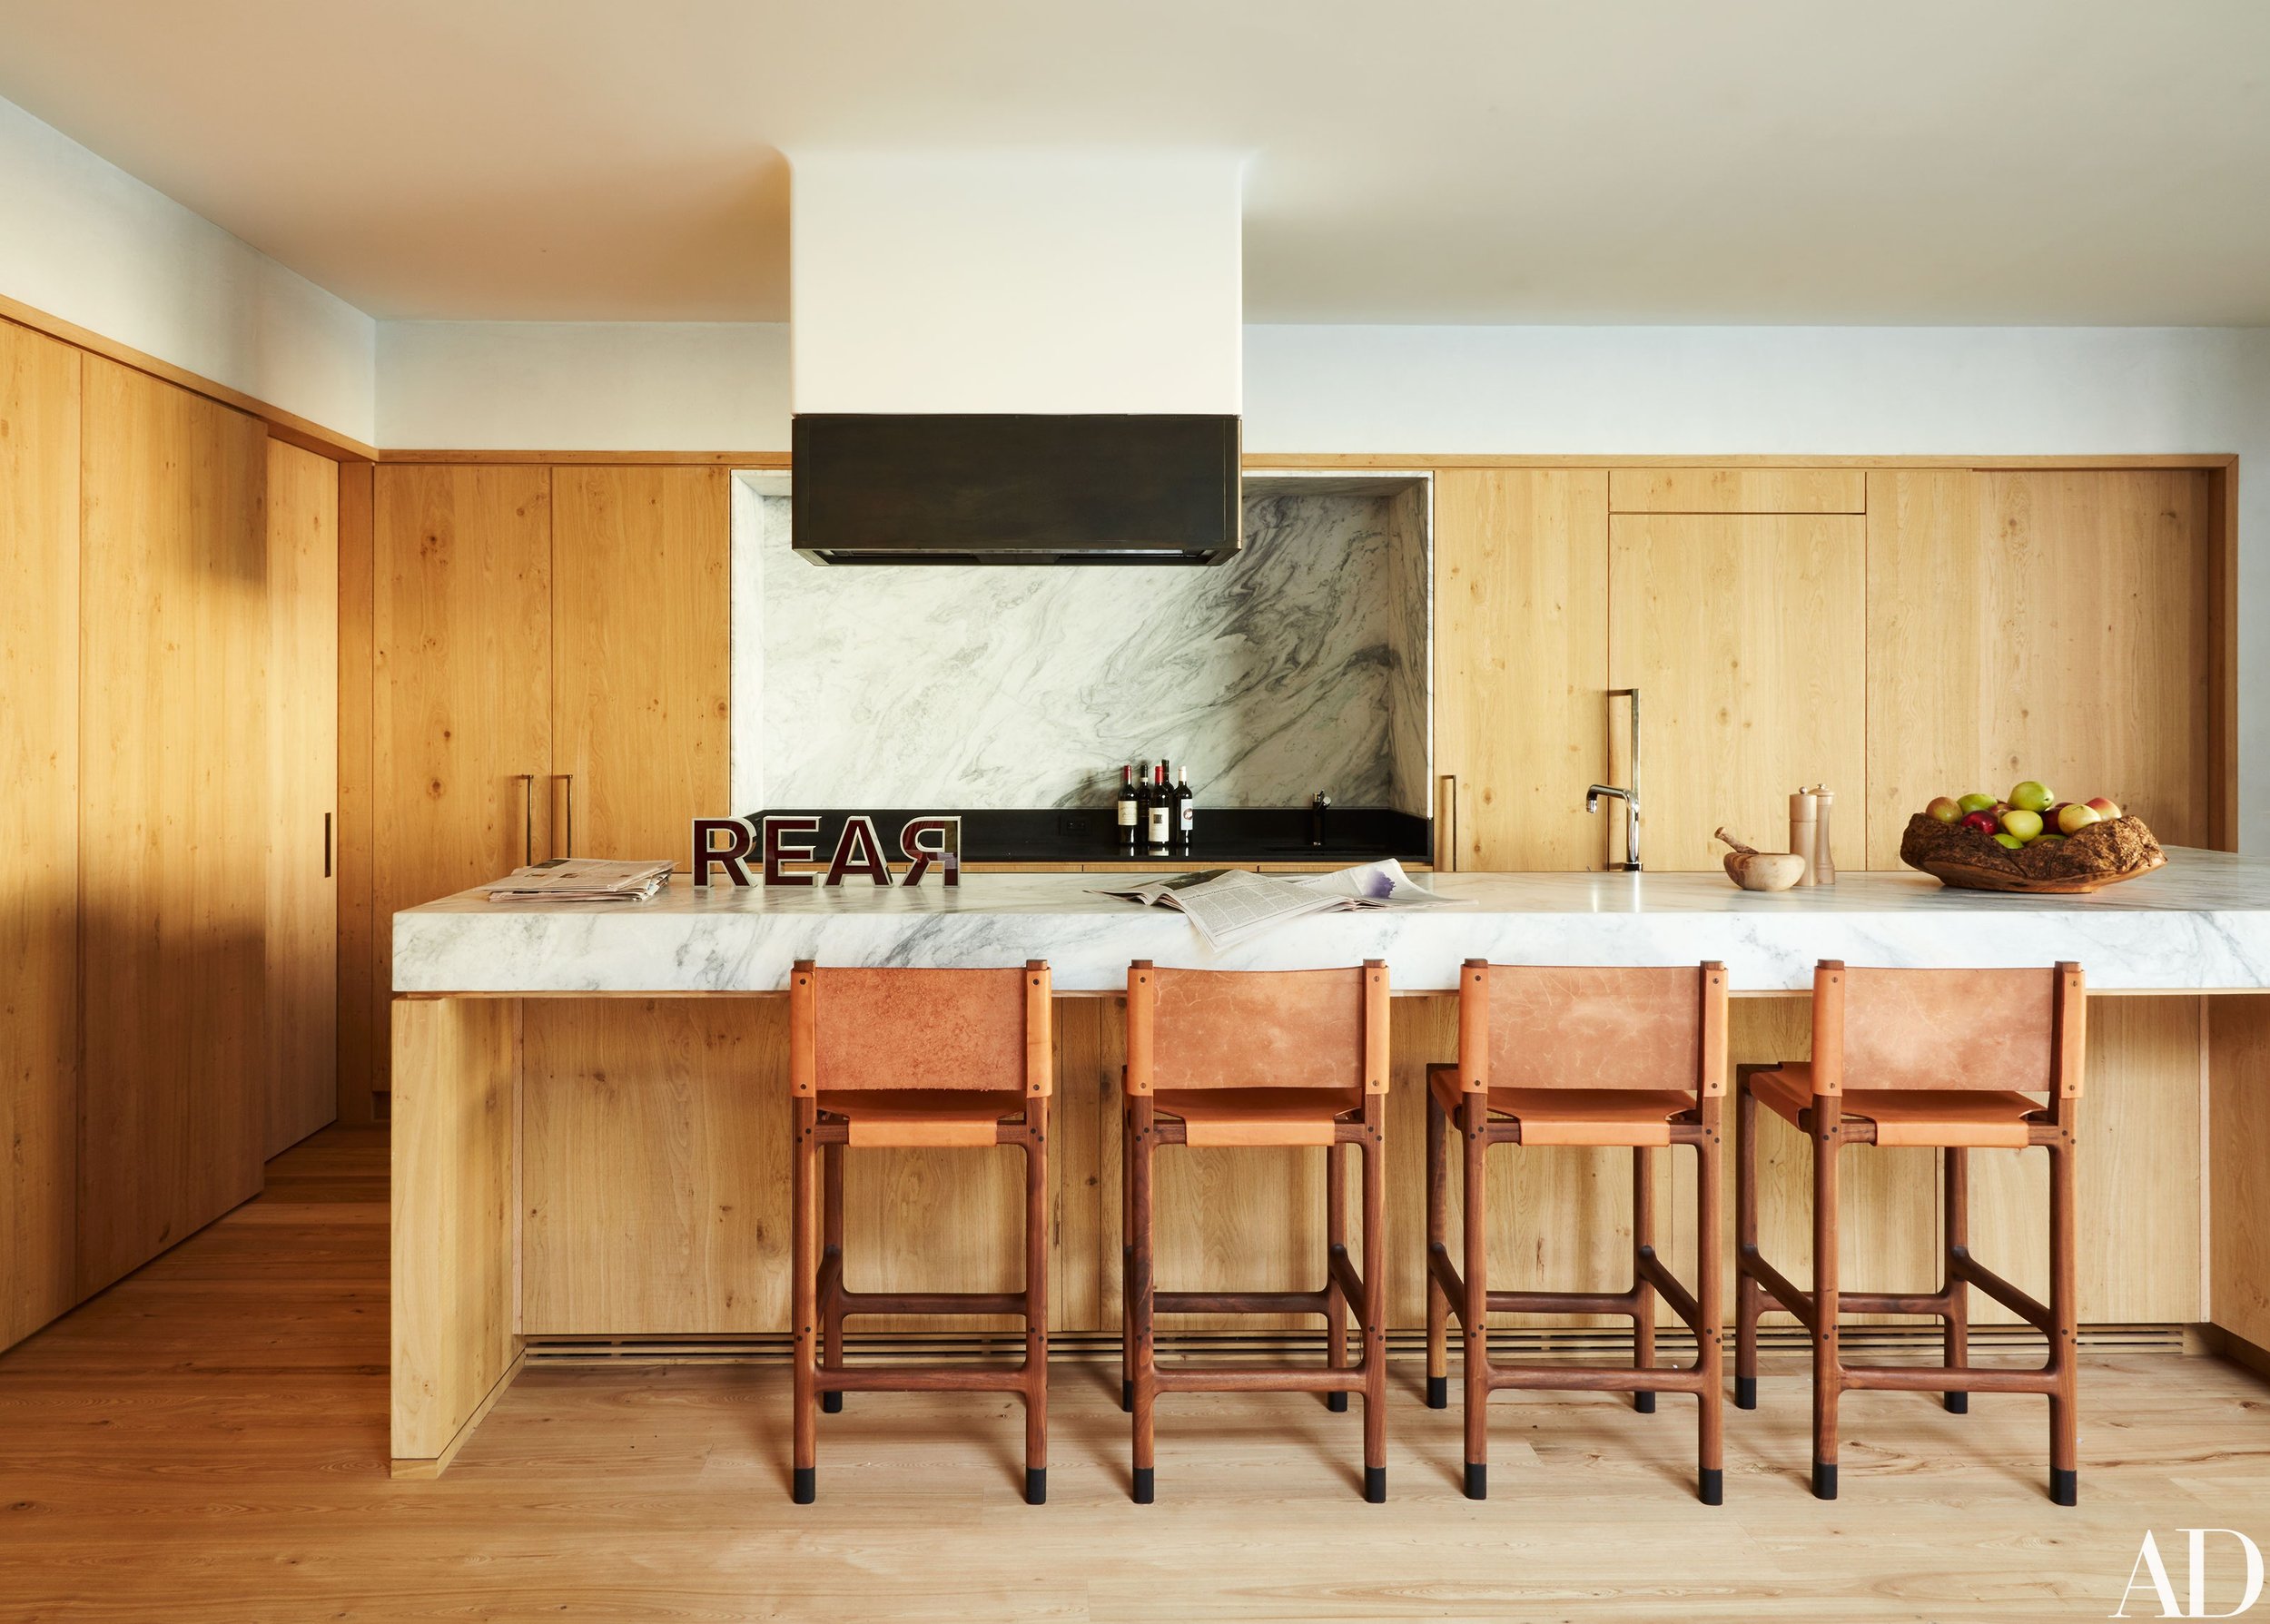 Wood kitchens feel warm and modern again